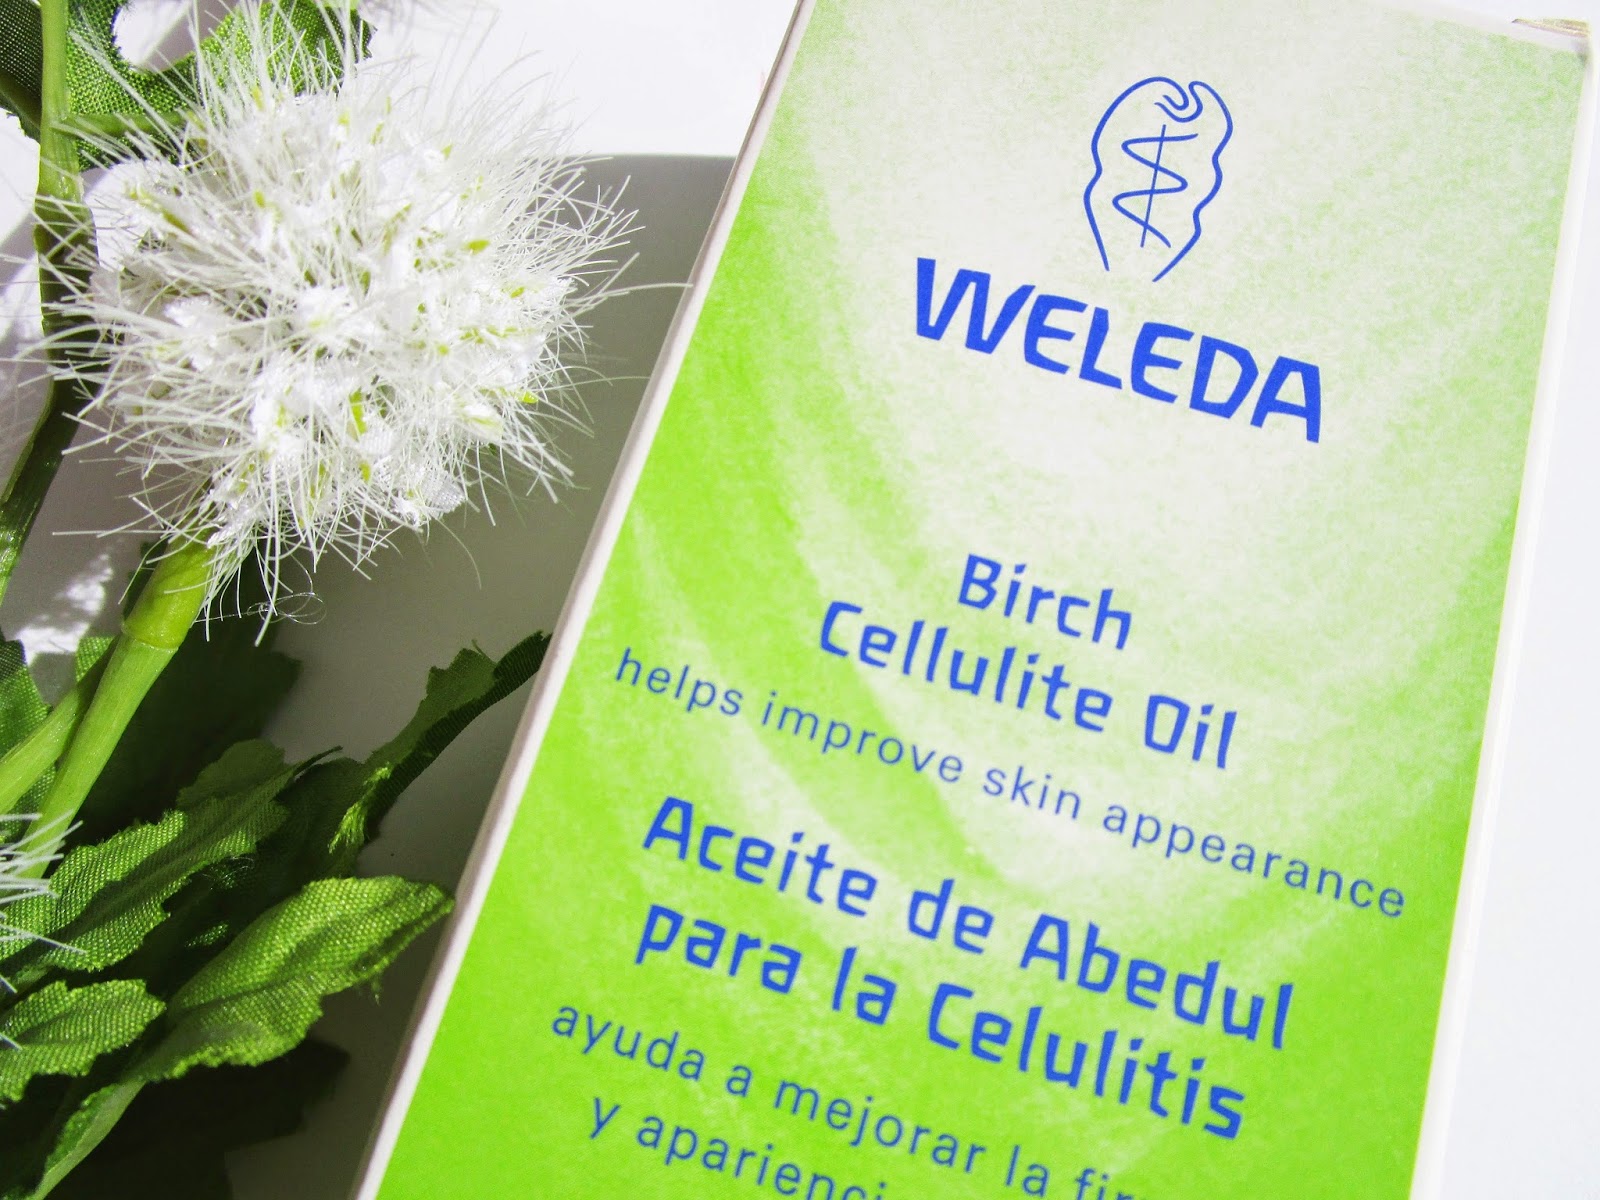 Aceite de Abedul para la celulitis de Weleda